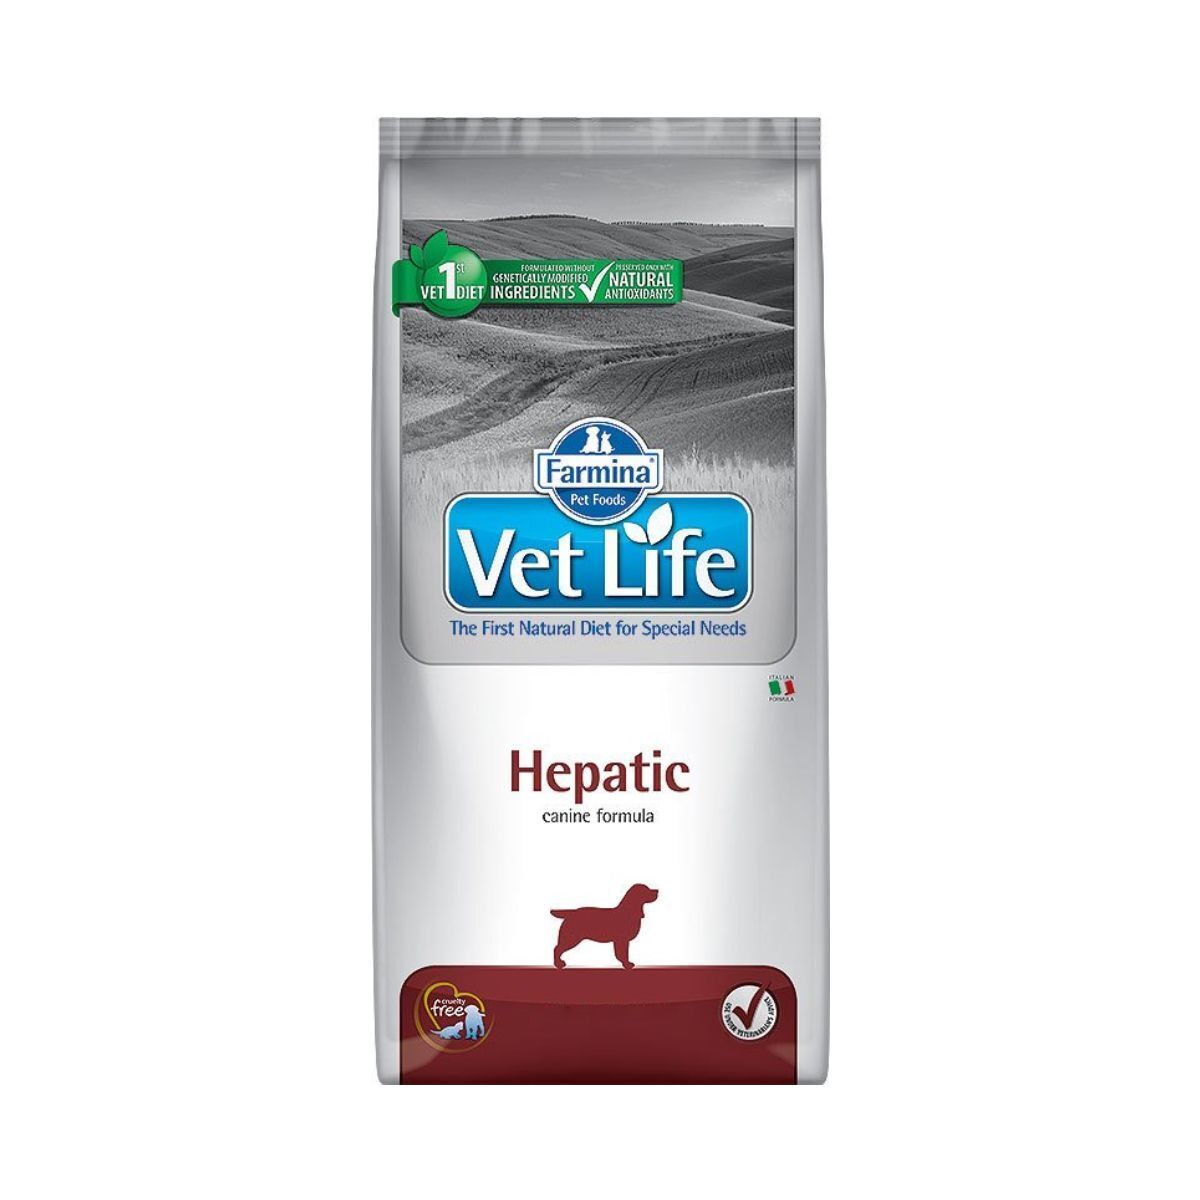 Сухой корм для собак farmina vet. Корм для собак vet Life Hypoallergenic. Farmina vet Life hepatic для собак. Vet Life Diabetic корм. Farmina vet Life hepatic консервы.